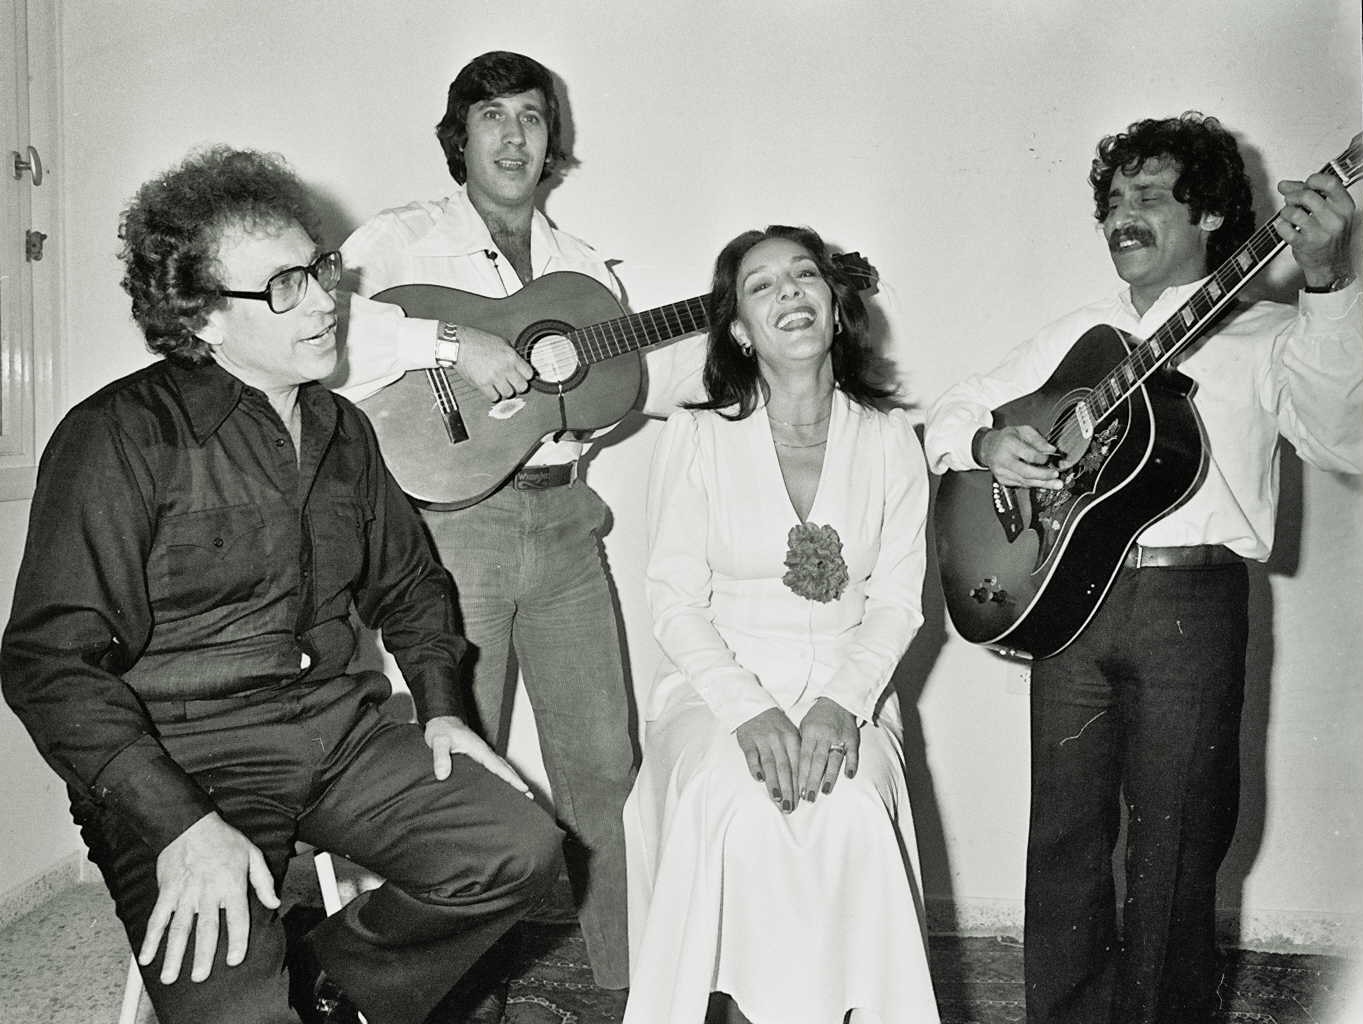 Dan Almagor et son équipe avant le voyage pour la campagne du Keren Hayessod, 1982